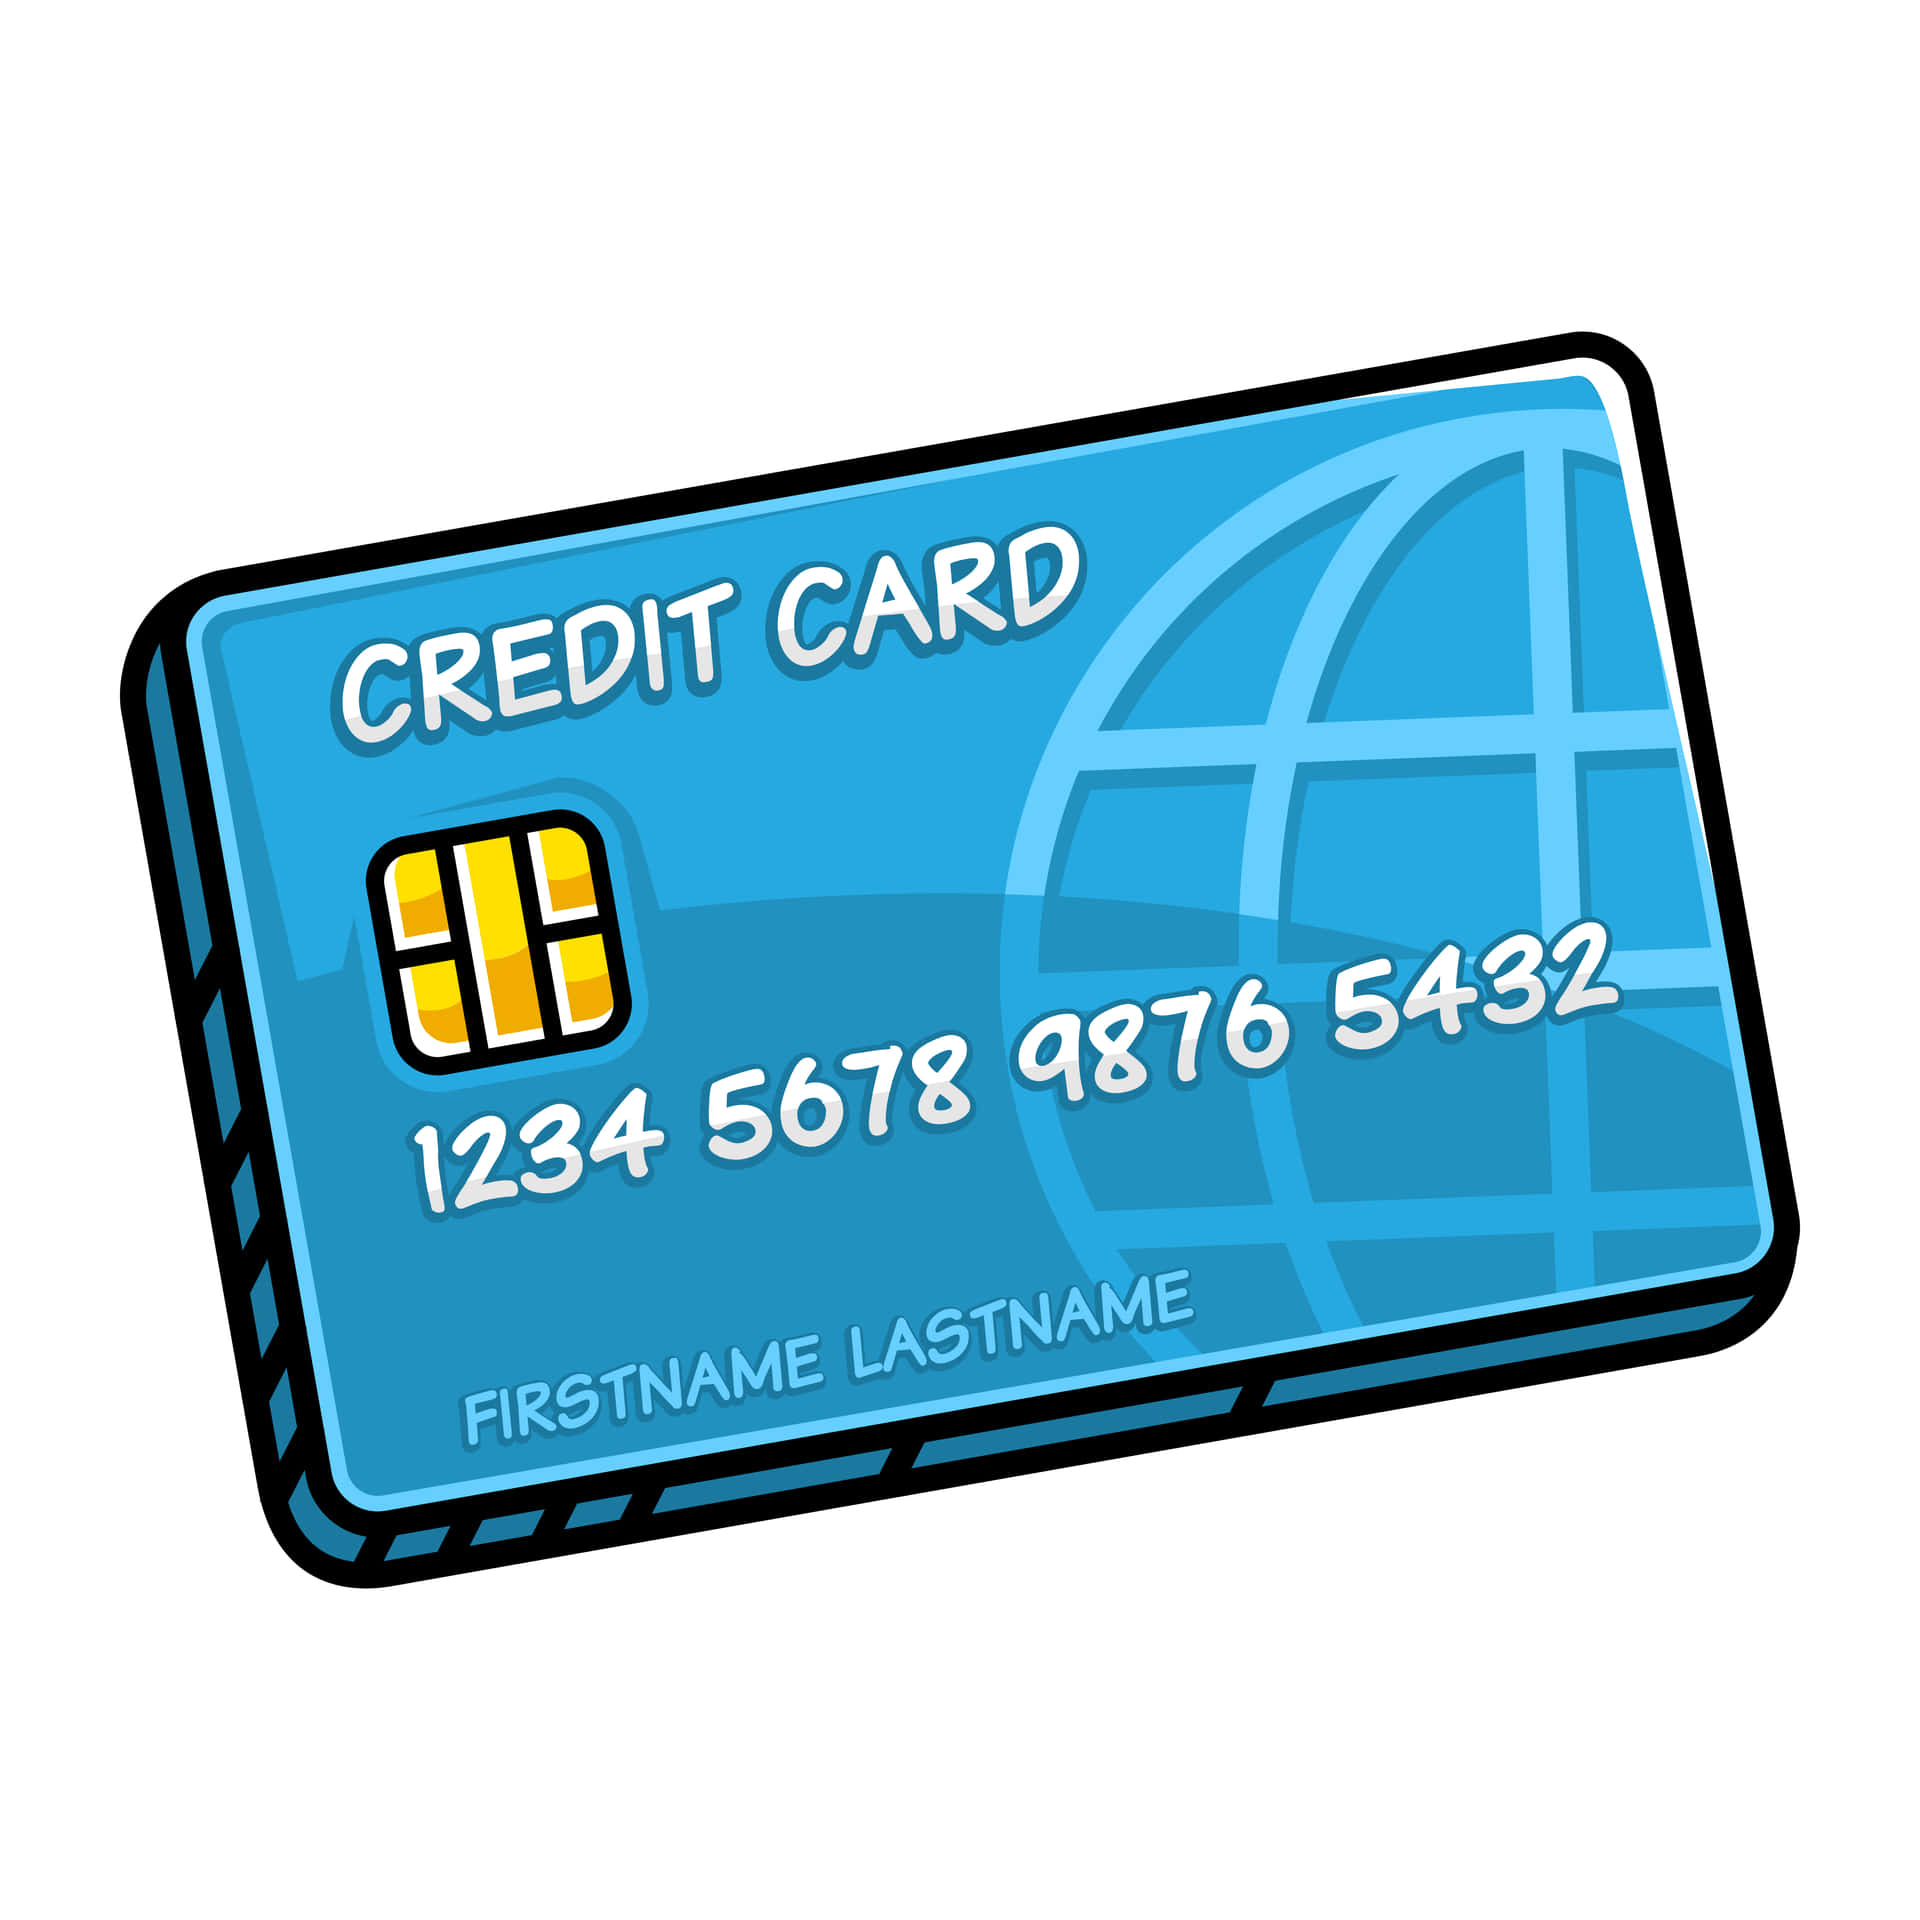 Dìaddio Al Contante E Passa A Pagamenti Digitali Più Sicuri Con Una Carta Di Credito